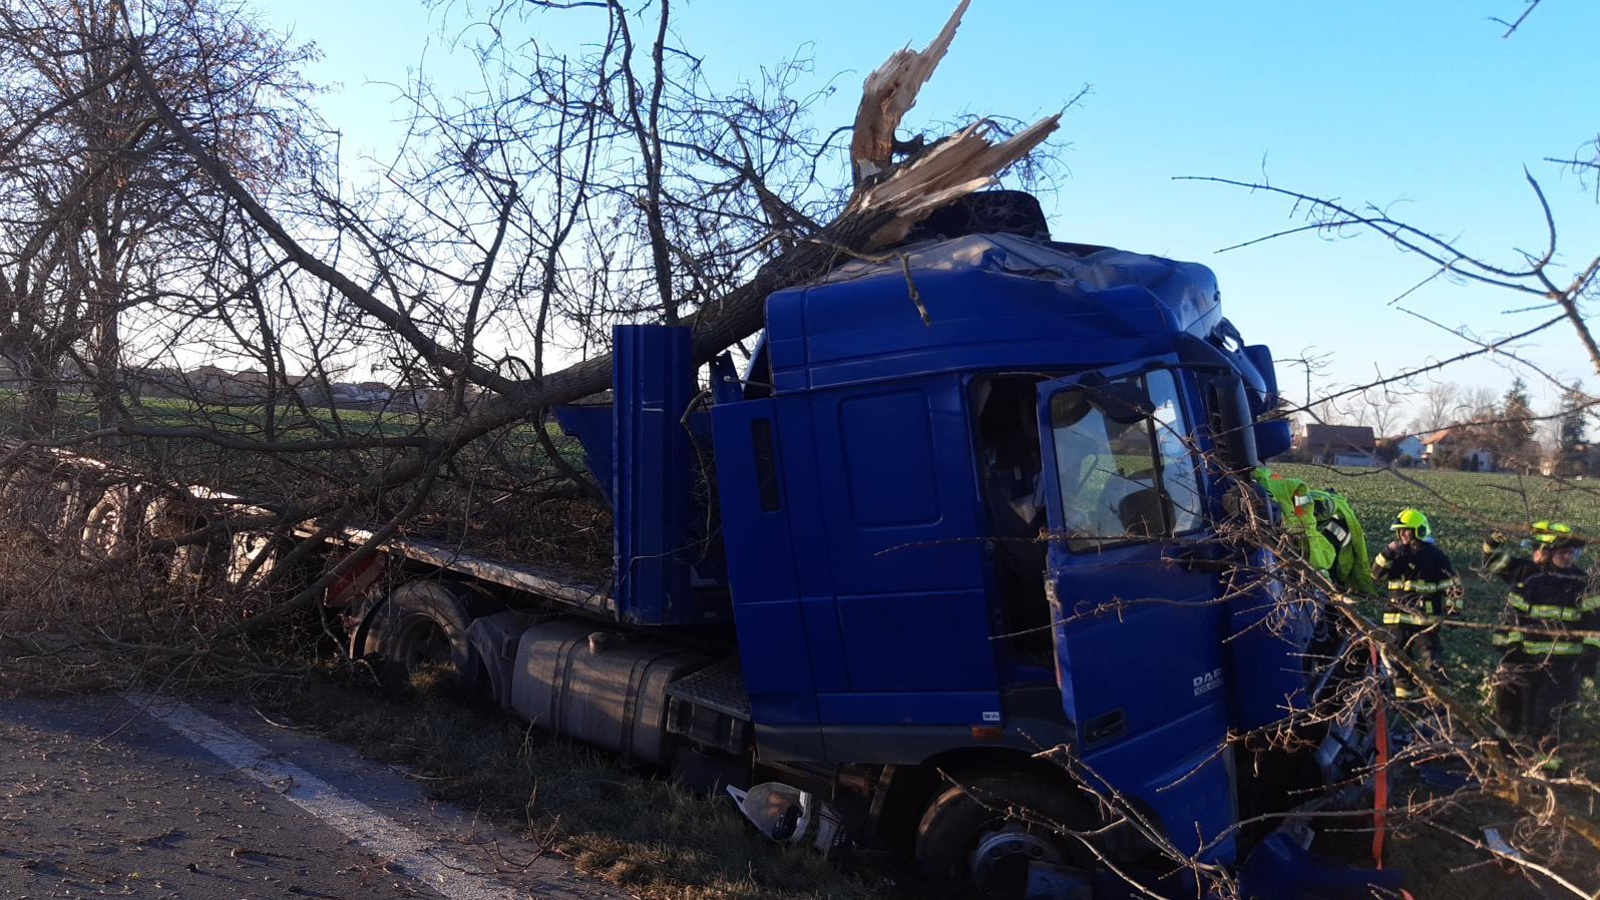 087-Havárie kamionu na silnici č. 17 mezi Čáslaví a obcí Vrdy.jpg